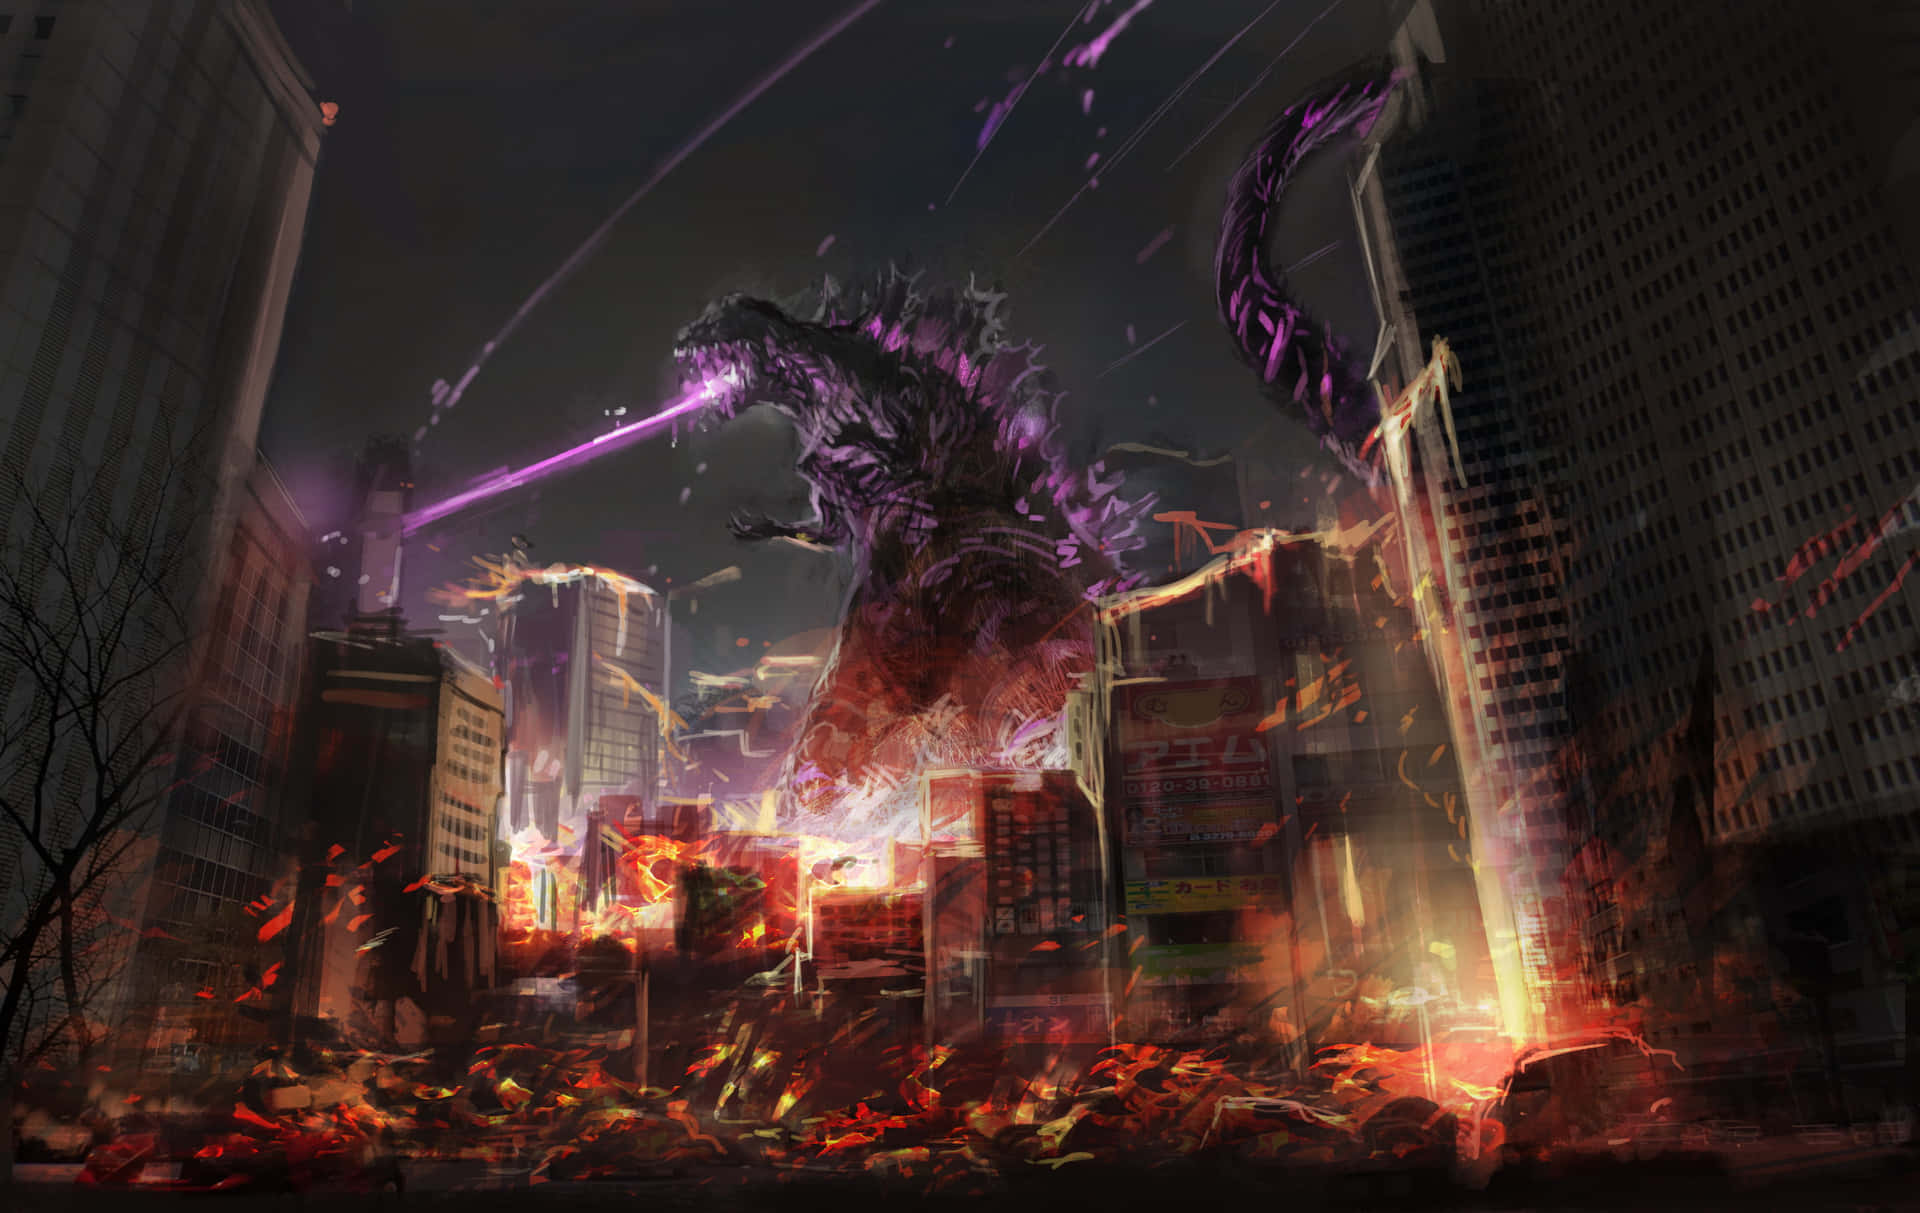 Godzillasteht Siegreich Vor Einem Hintergrund Der Zerstörung.